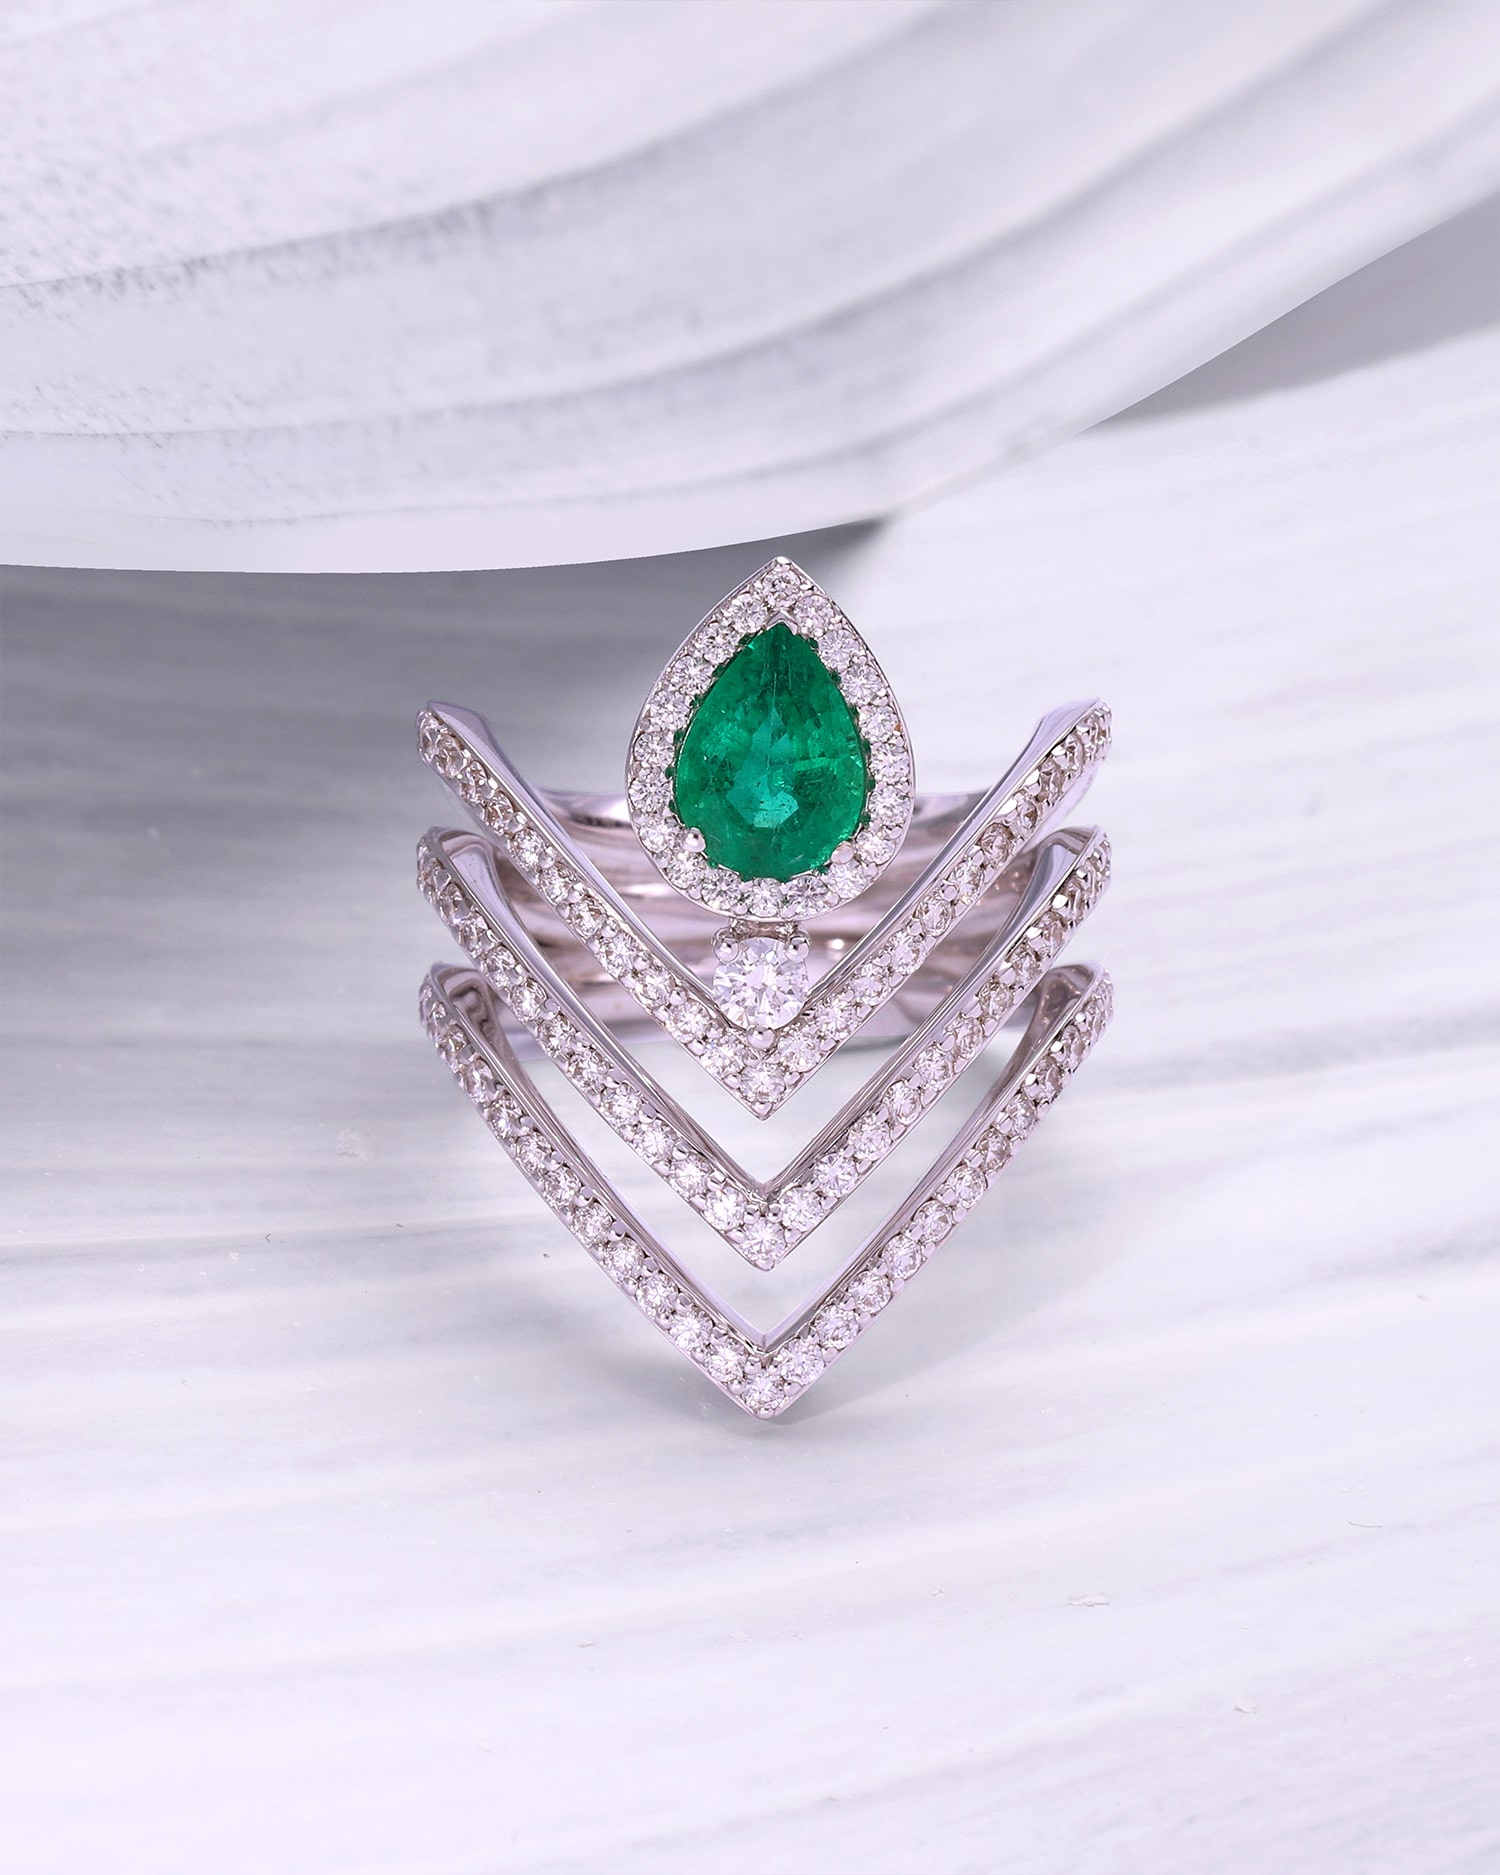 modelo con anillo de oro blanco y esmeralda verde de la coleccion drea jewelry de alta joyeria